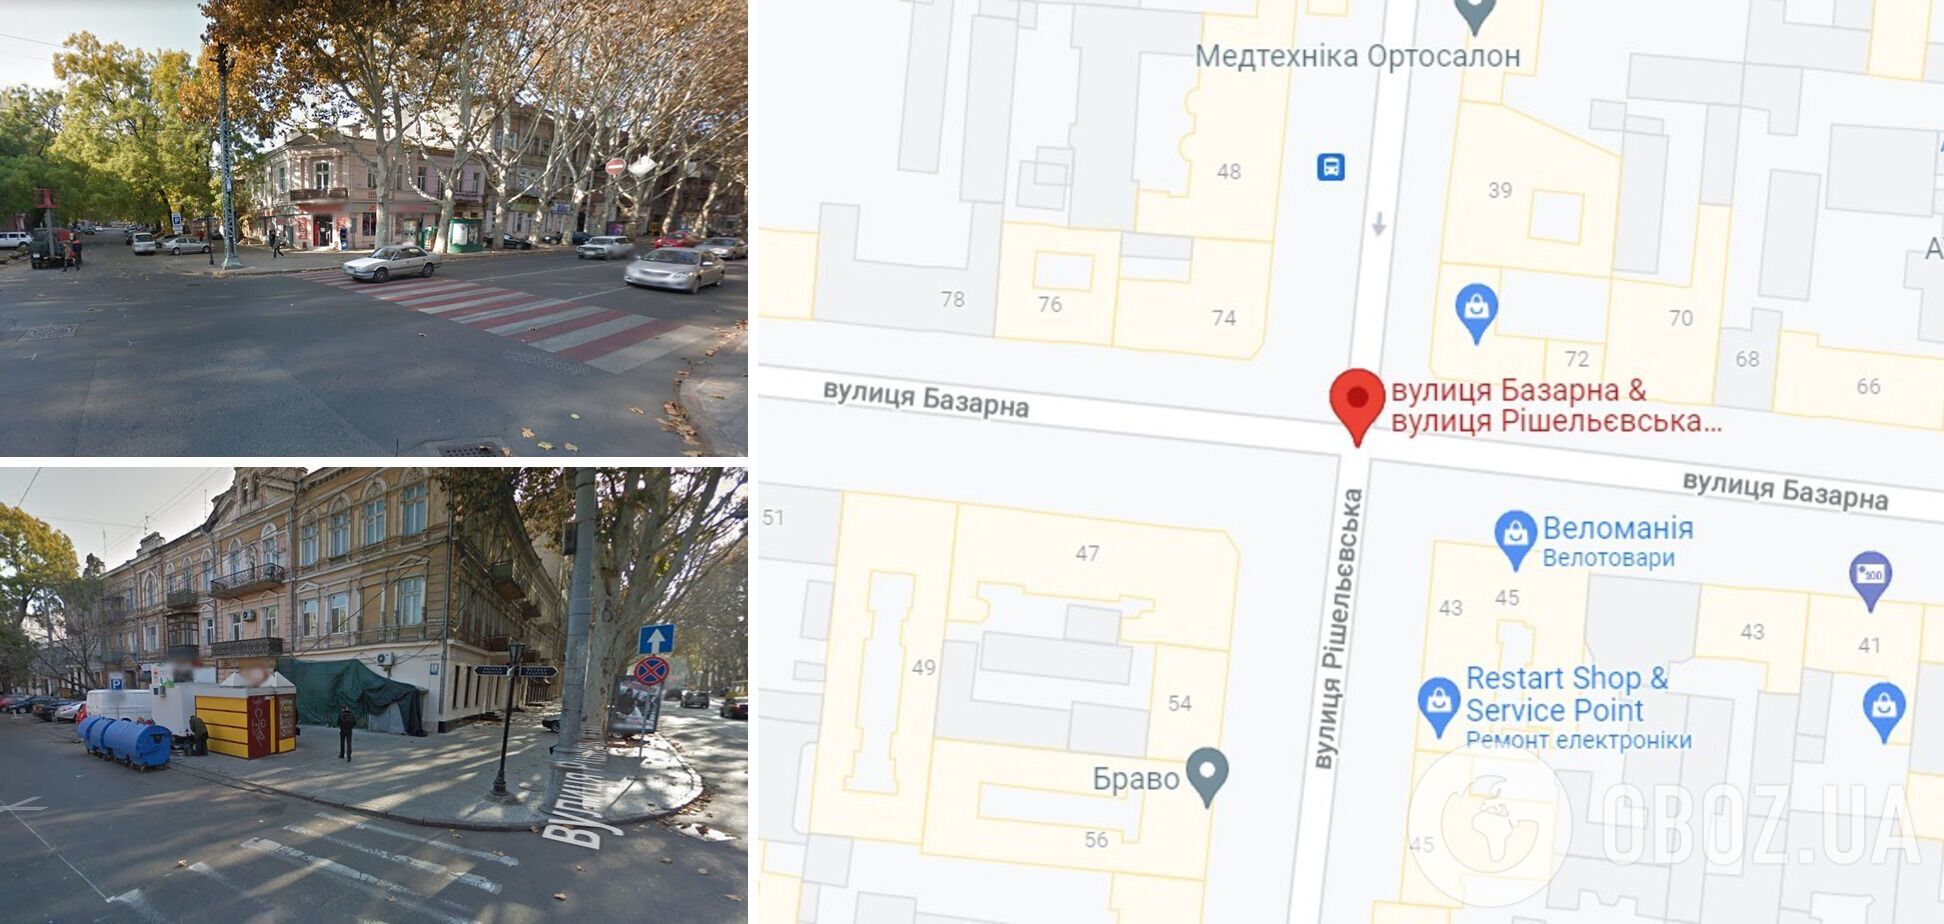 ДТП произошло на перекрестке улиц Ришельевская и Базарная